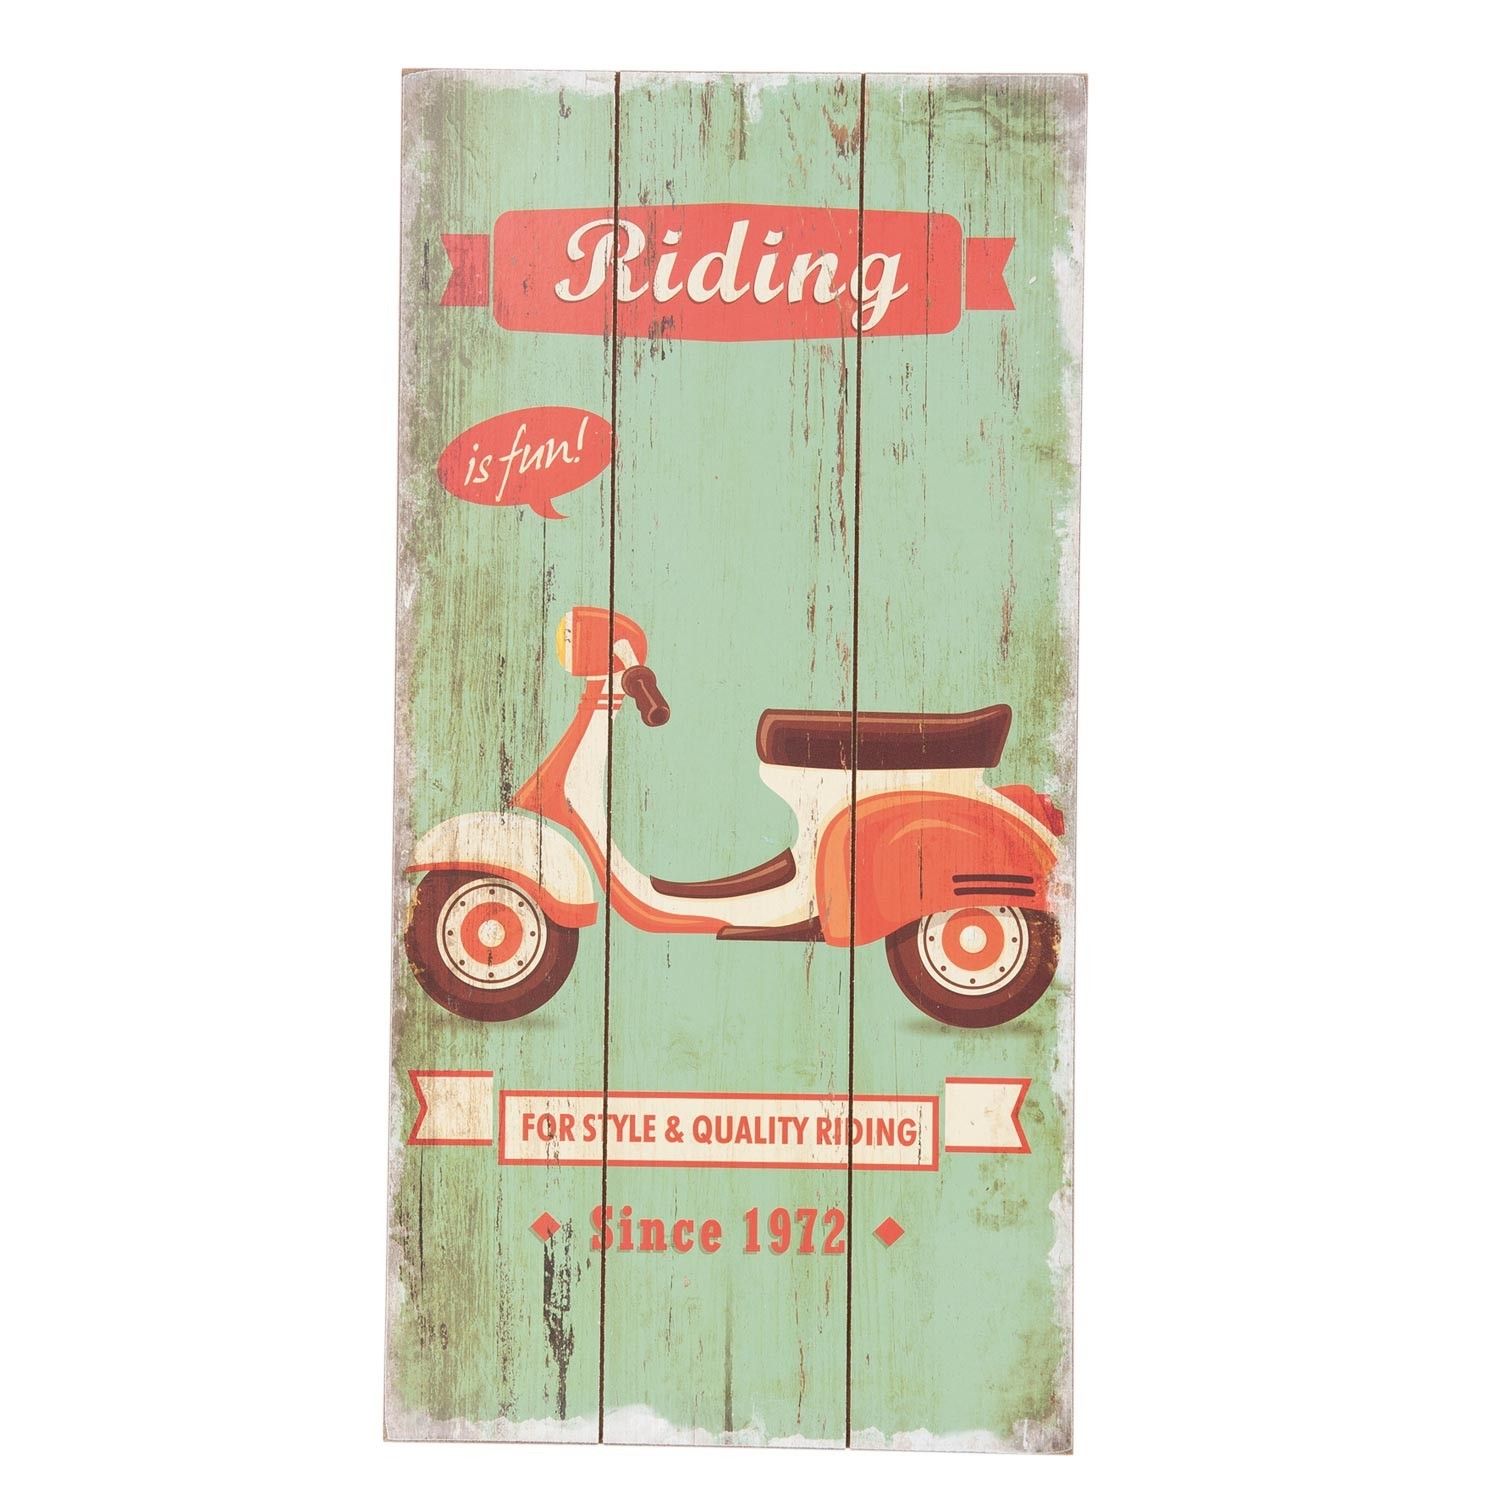 Cedule Riding is fun - 24*1*48 cm Clayre & Eef - LaHome - vintage dekorace